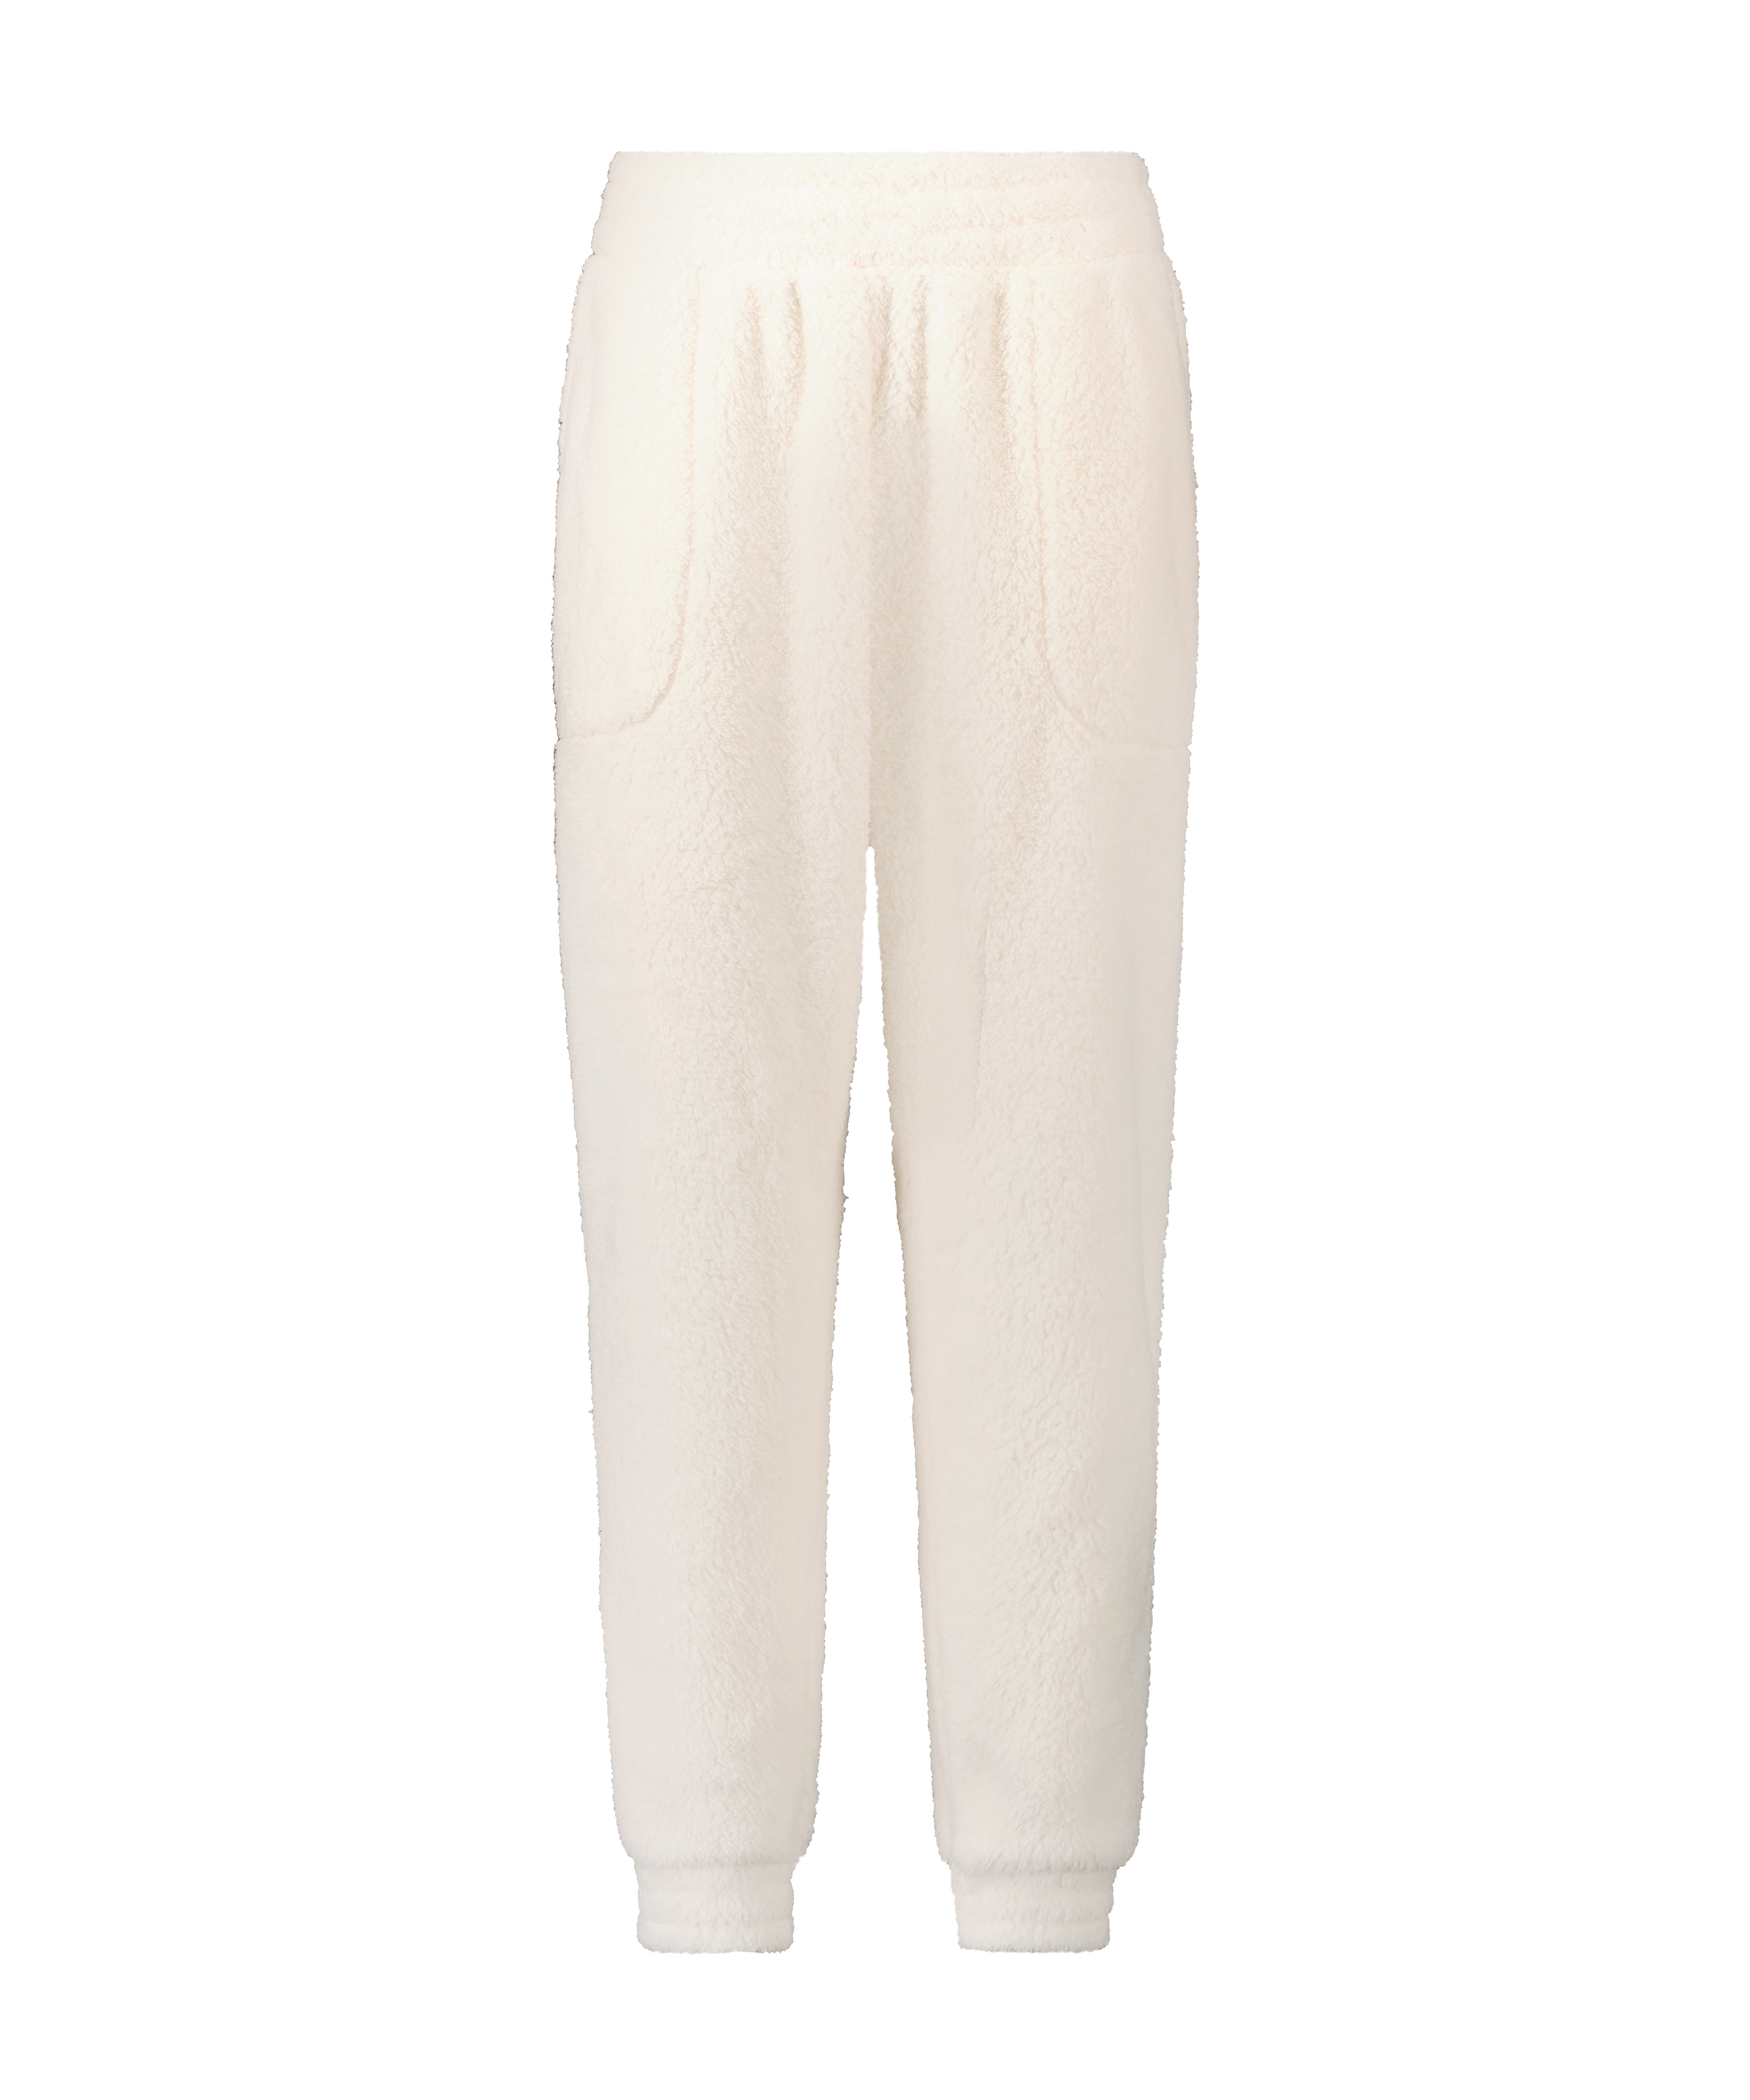 Pantalón de chándal de tejido polar tallas grandes, Blanco, main